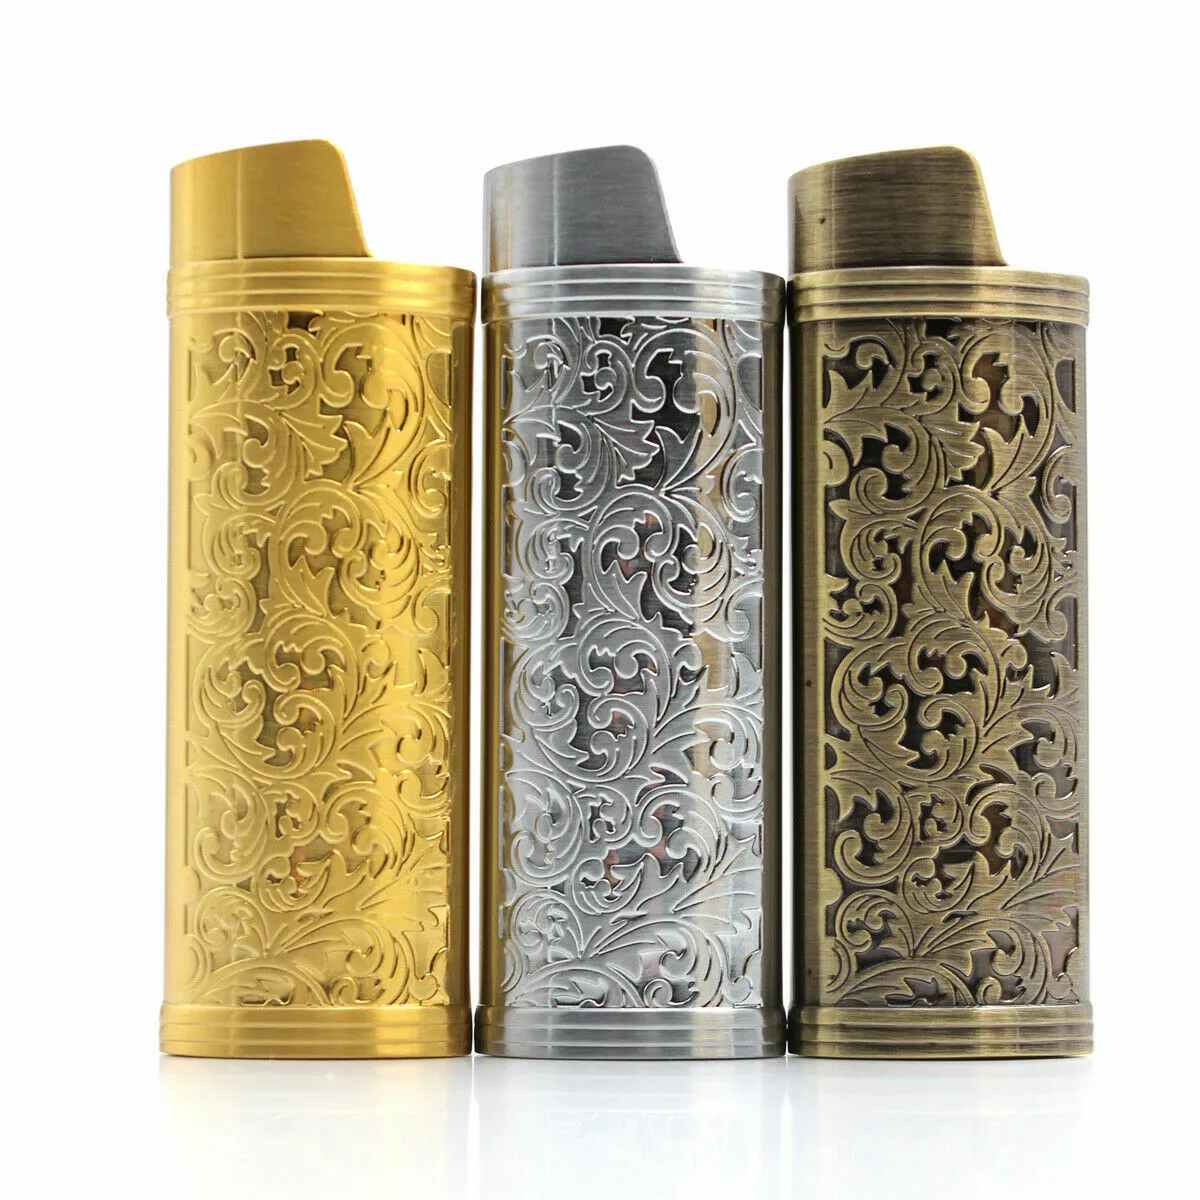 Lucklybestseller Metal Lighter Case Cover Holder , Silver Mirror Surface  Lighter Sleeve for BIC Full Size Lighter Type J6